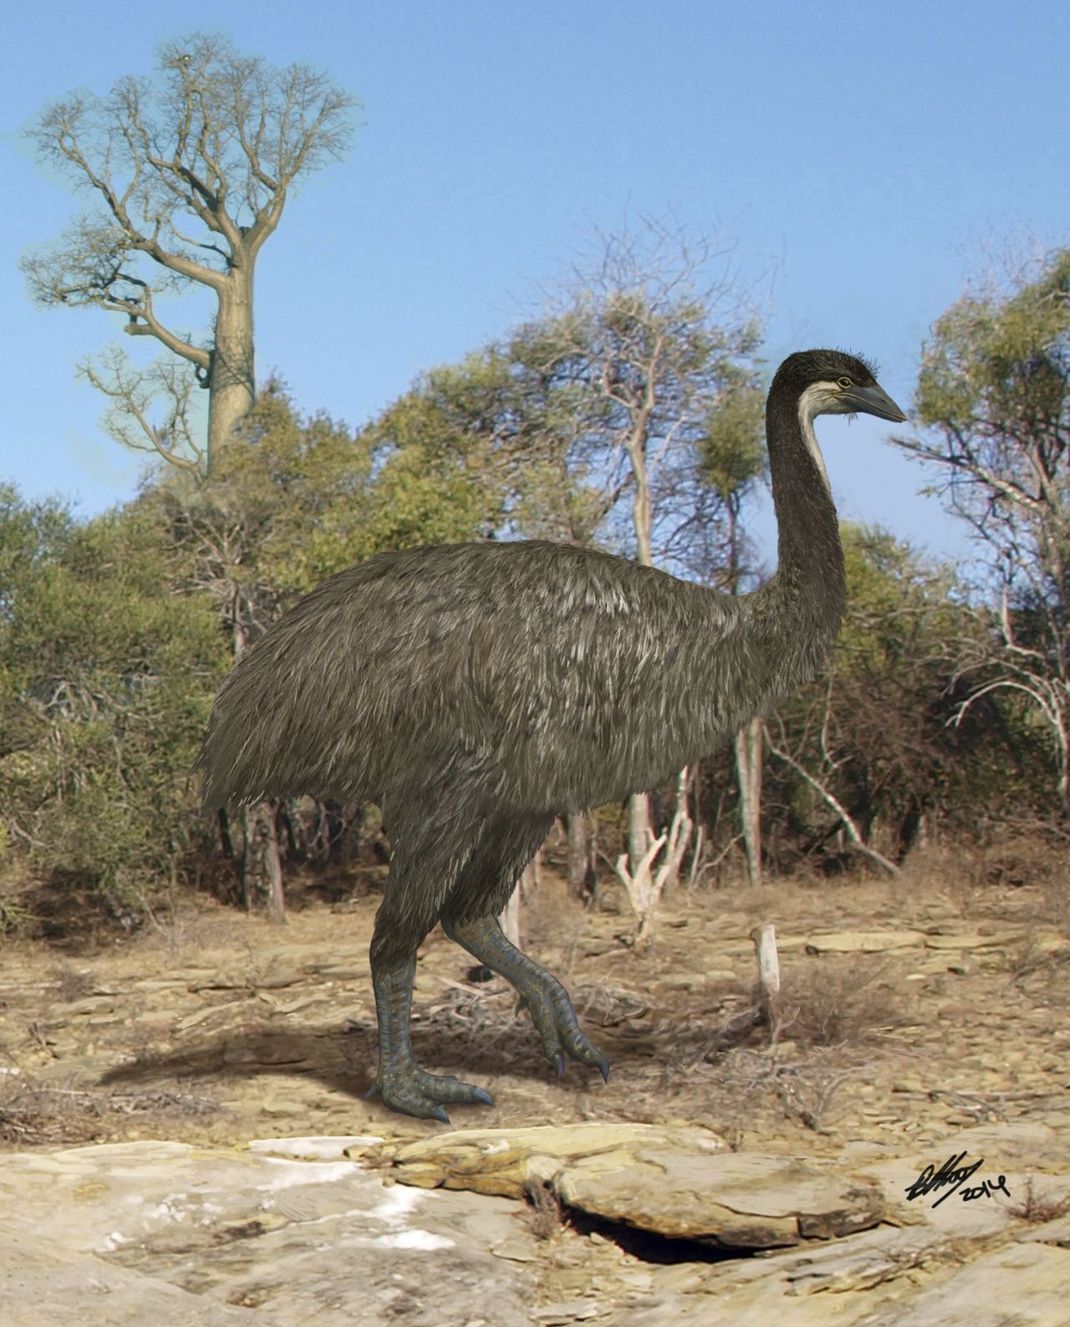 Ausgestorbener Gigant: Der Elefantenvogel gilt als größte Vogelart der Welt. Er lebte auf Madagaskar und wurde rund drei Meter groß. Das Bild zeigt eine Illustration des möglichen Aussehens.